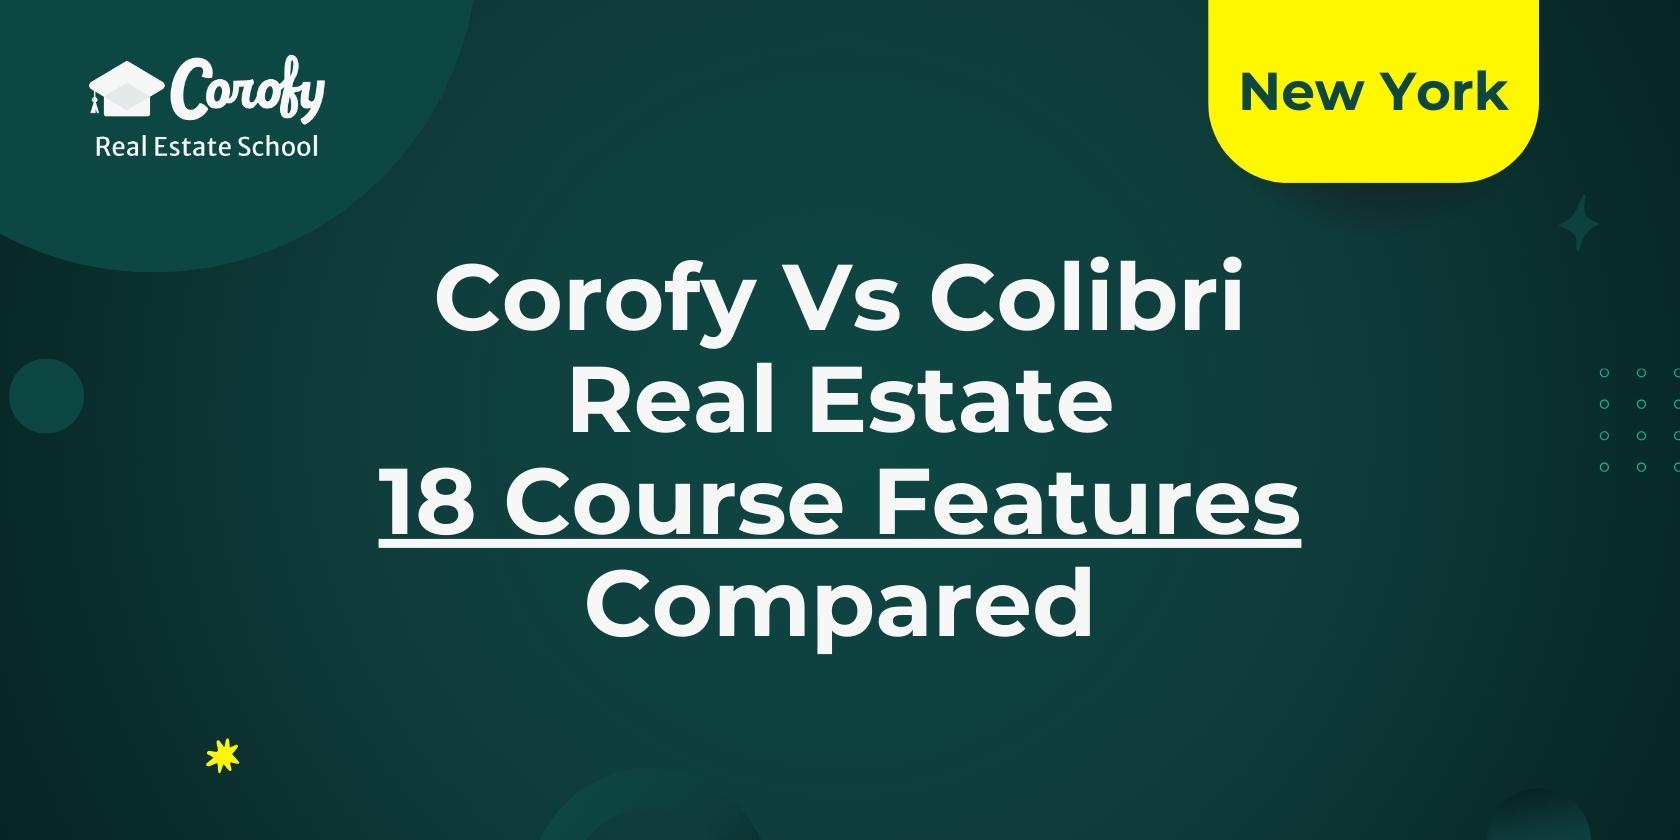 Corofy vs Colibri Real Estate - 18 Course Features Compared